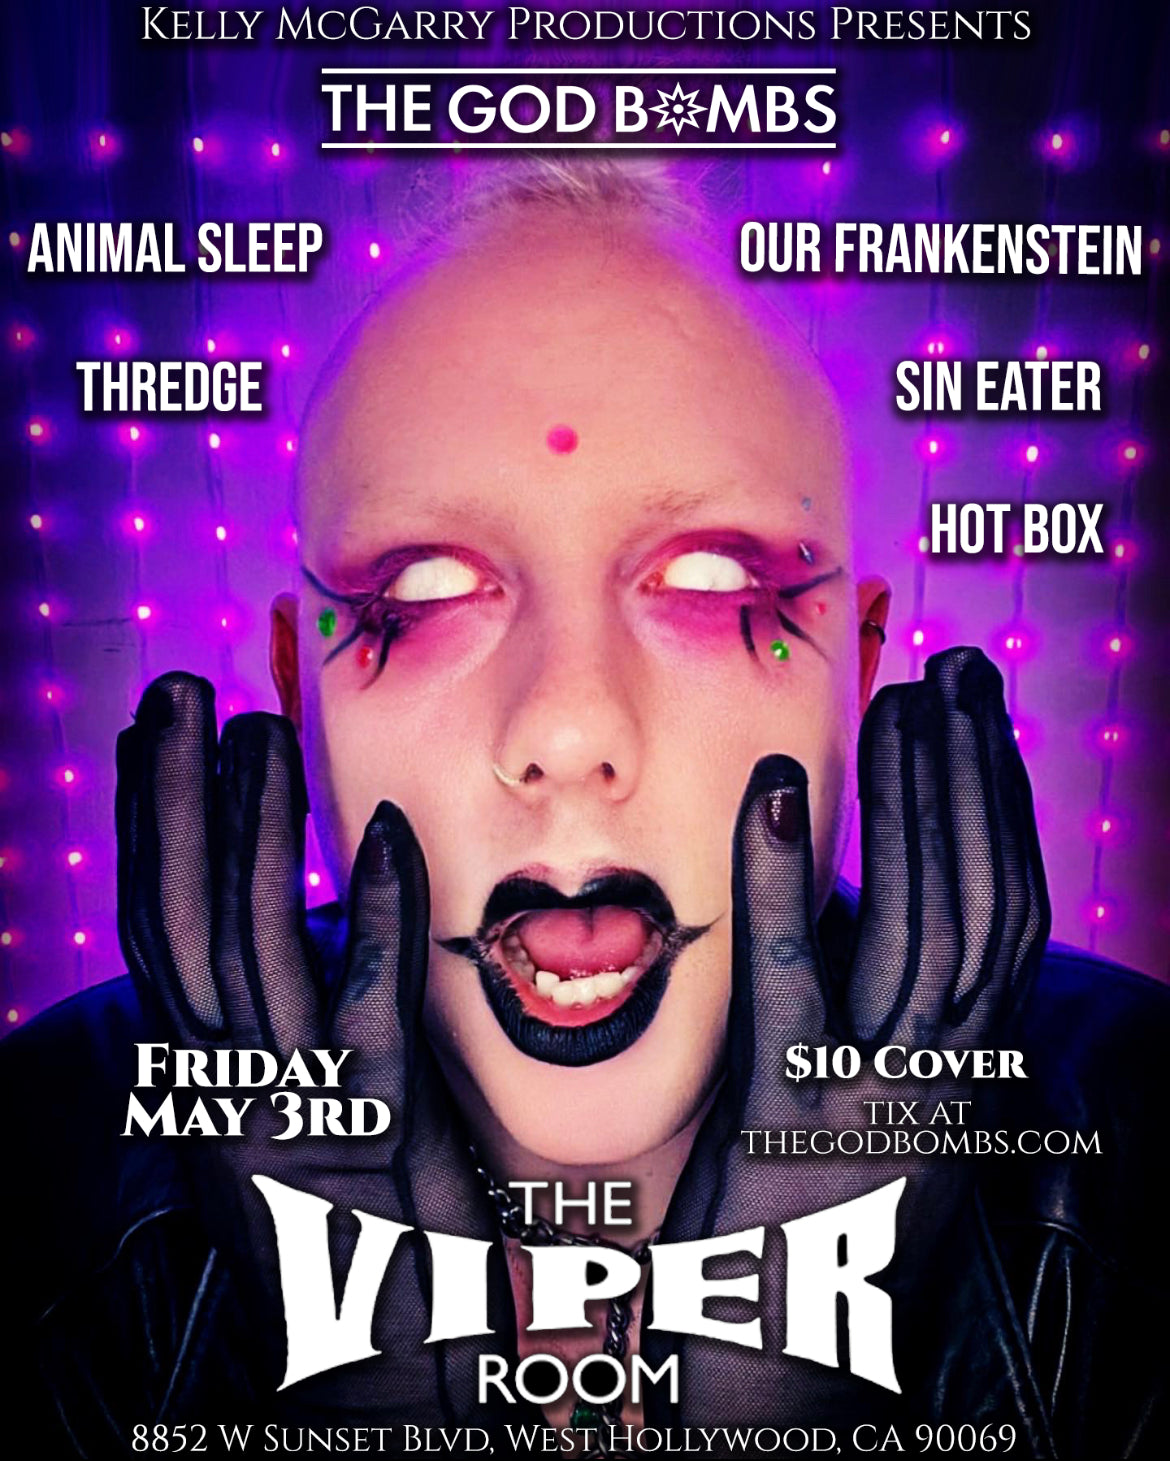 5/3 Viper Room Ticket